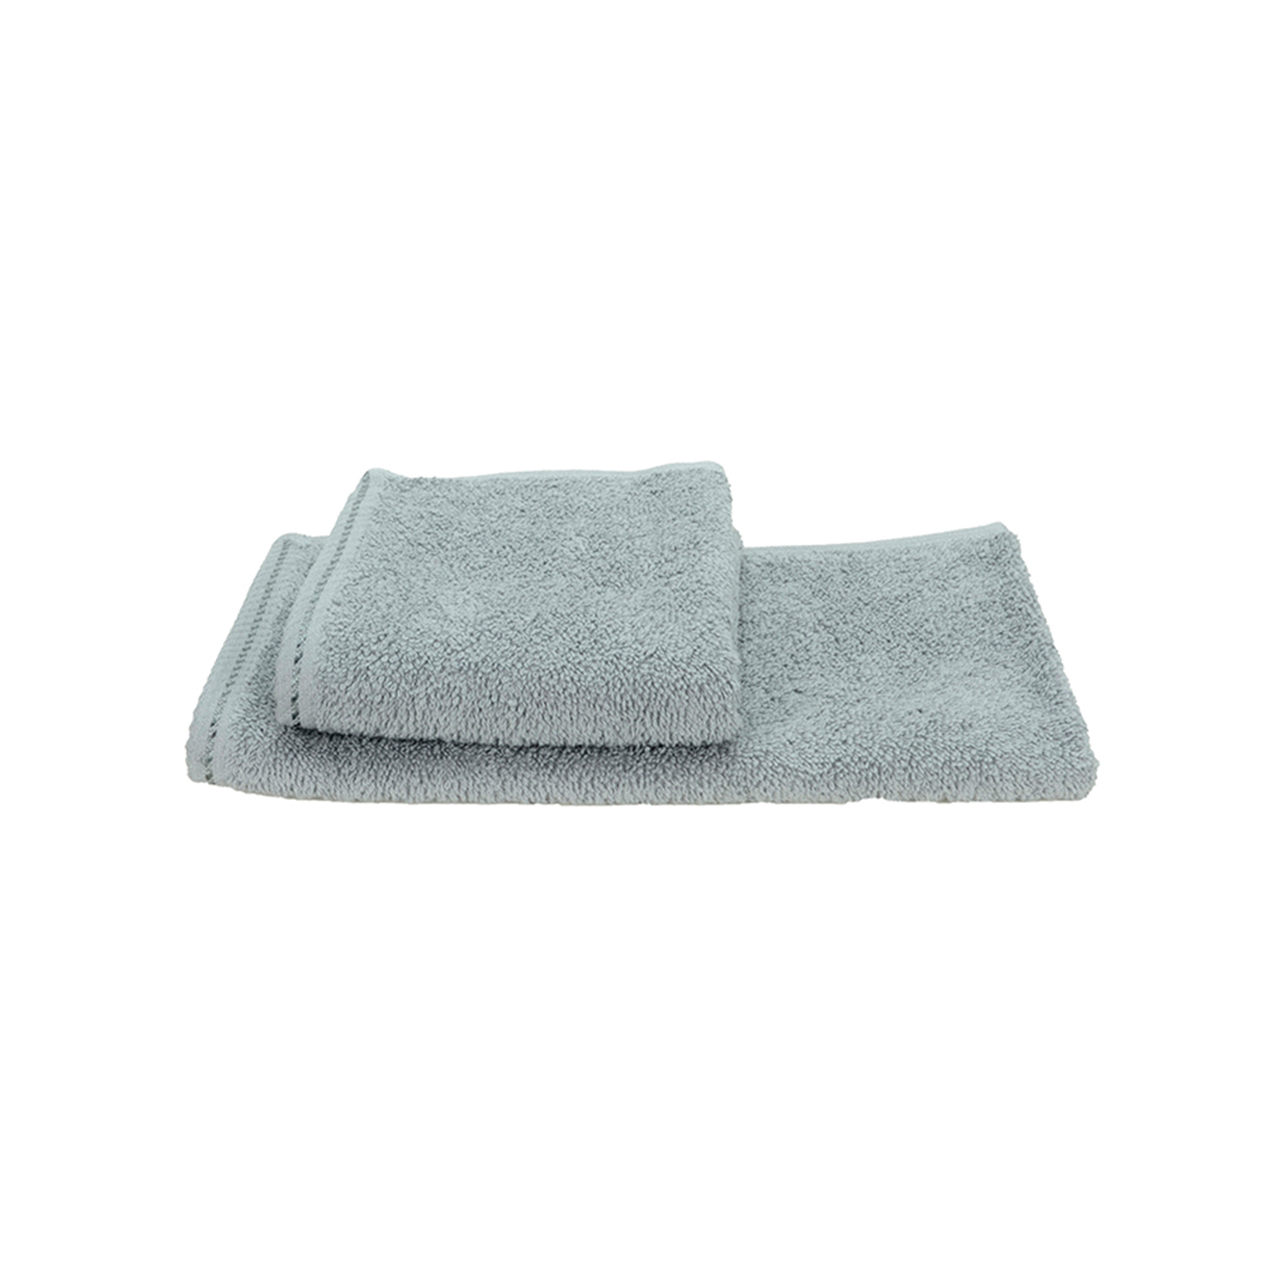 Premium guest towel 500 g/m² 30 x 50 cm A